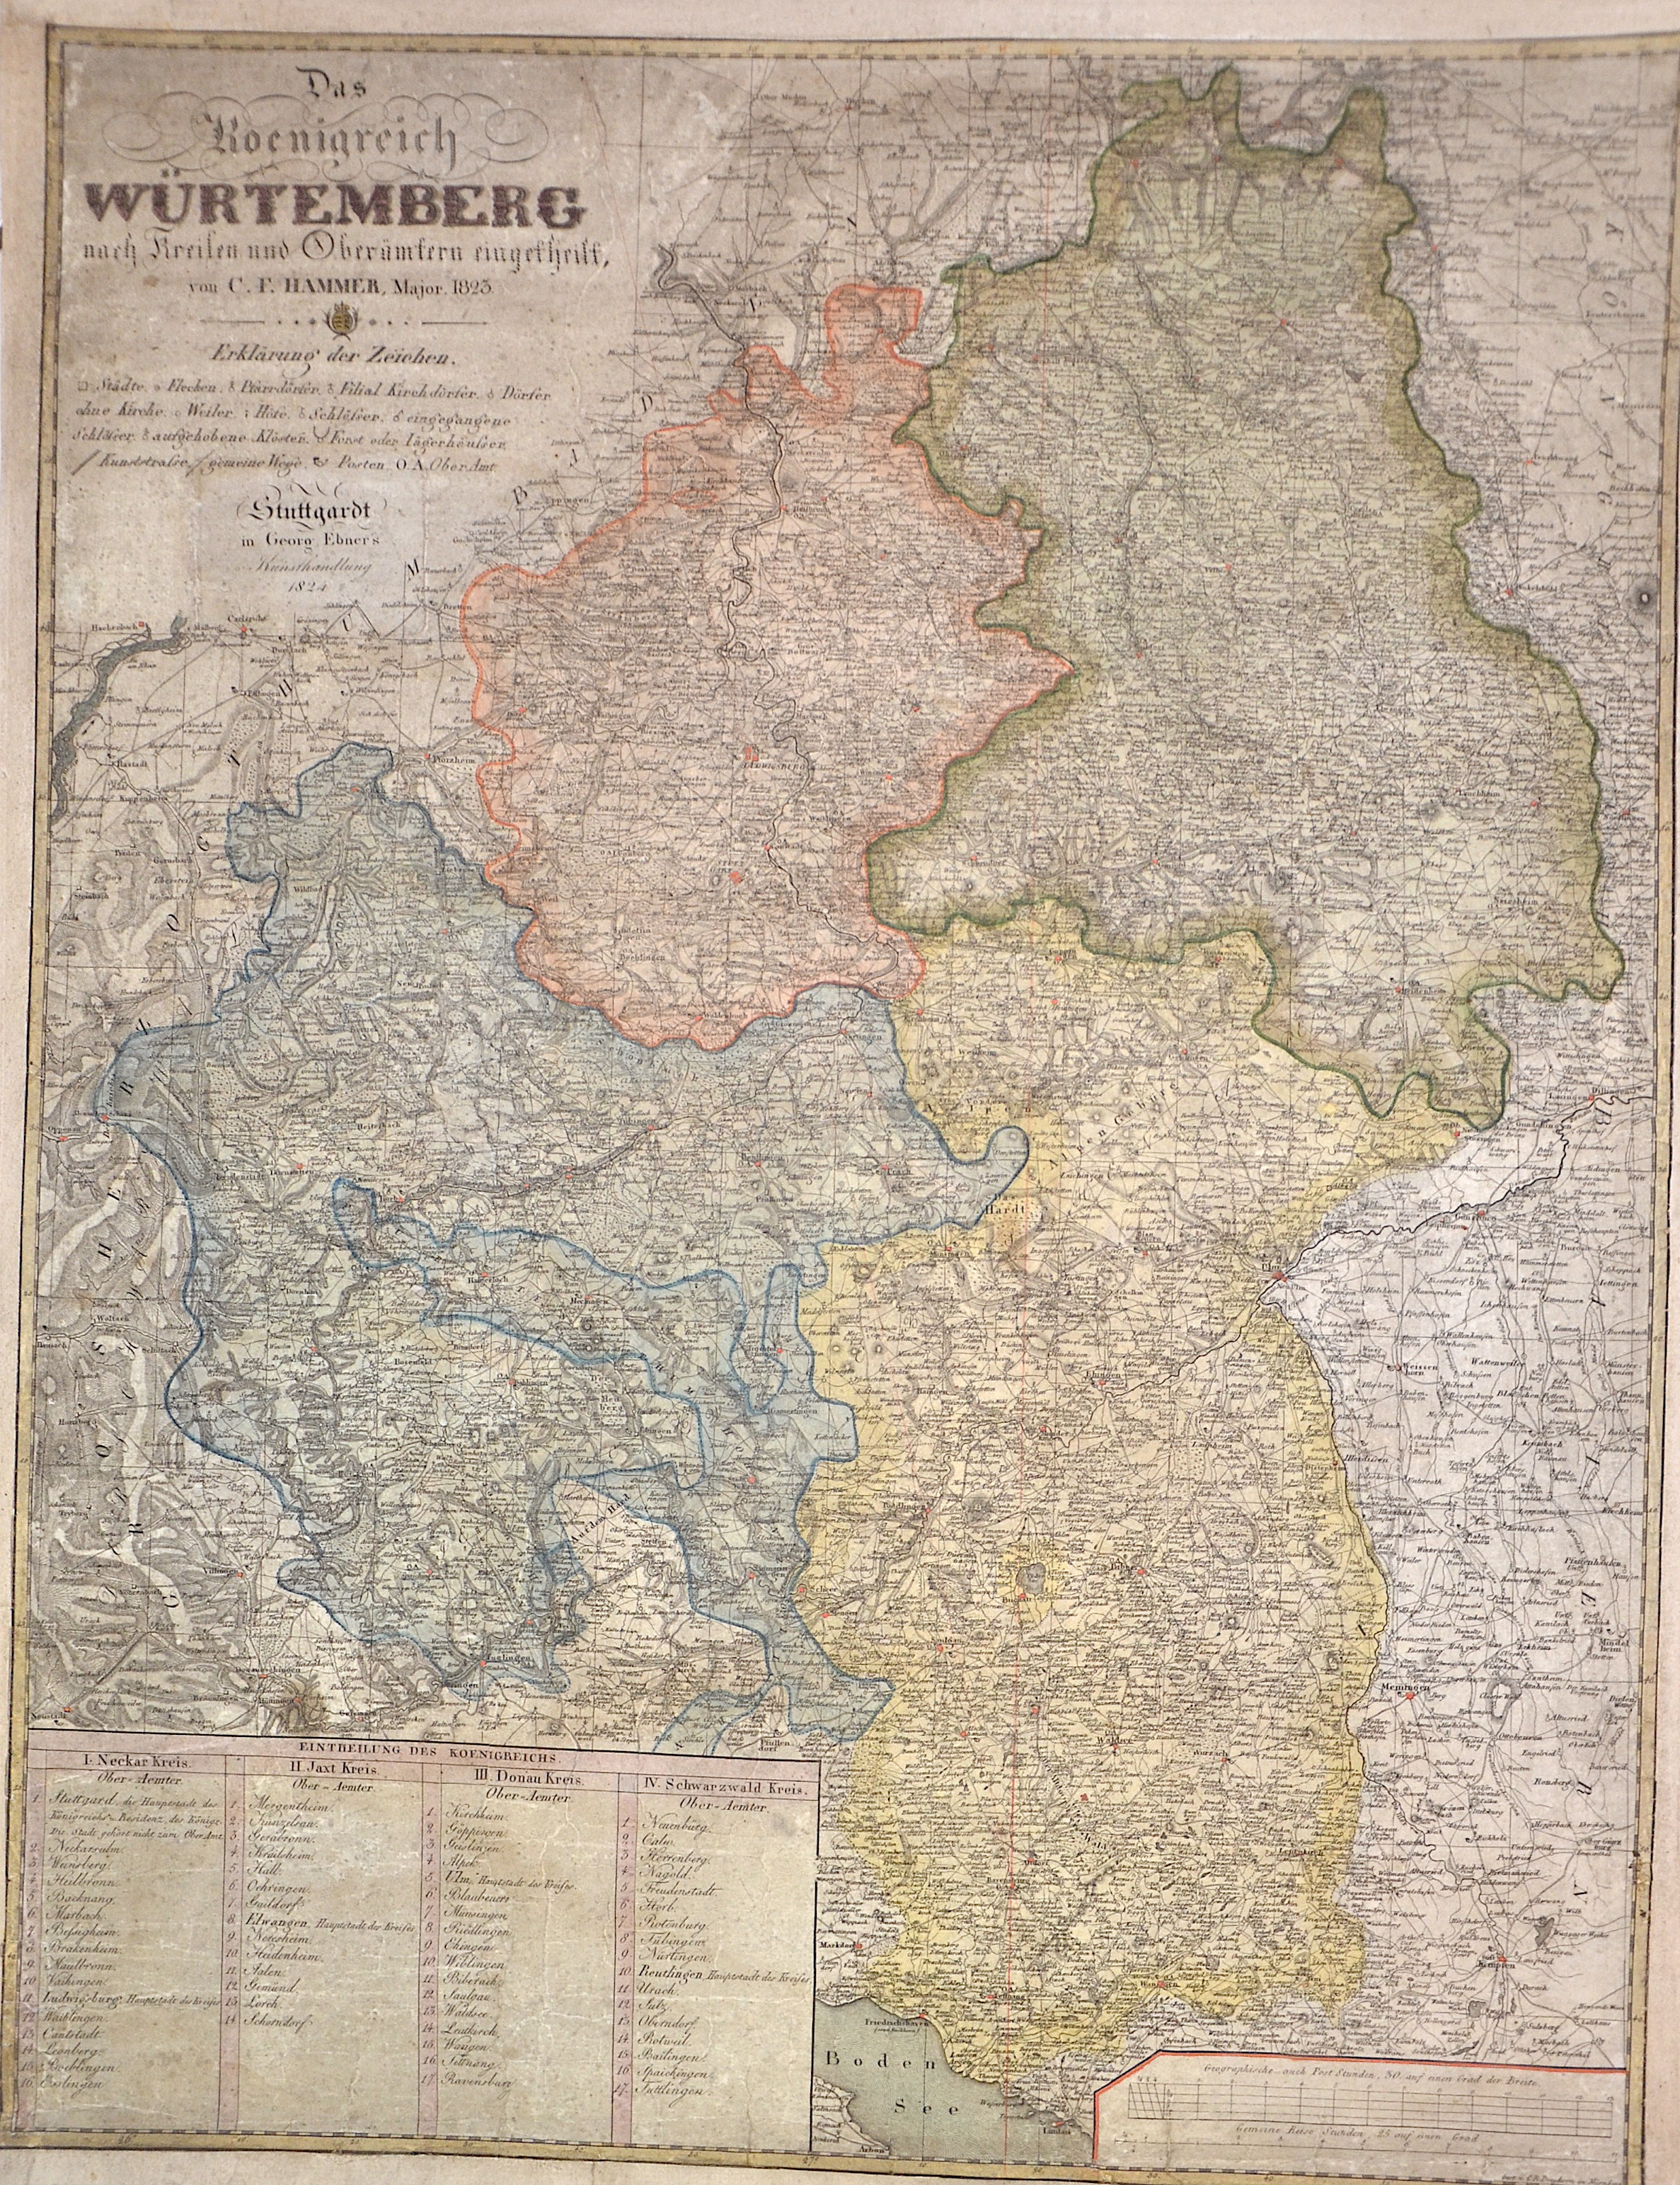 Dreykorn C. R. Das Koenigreich Würtemberg nach Kreisen und Oberämtern eingefheilt, von C. F. Hammer, Major. 1823